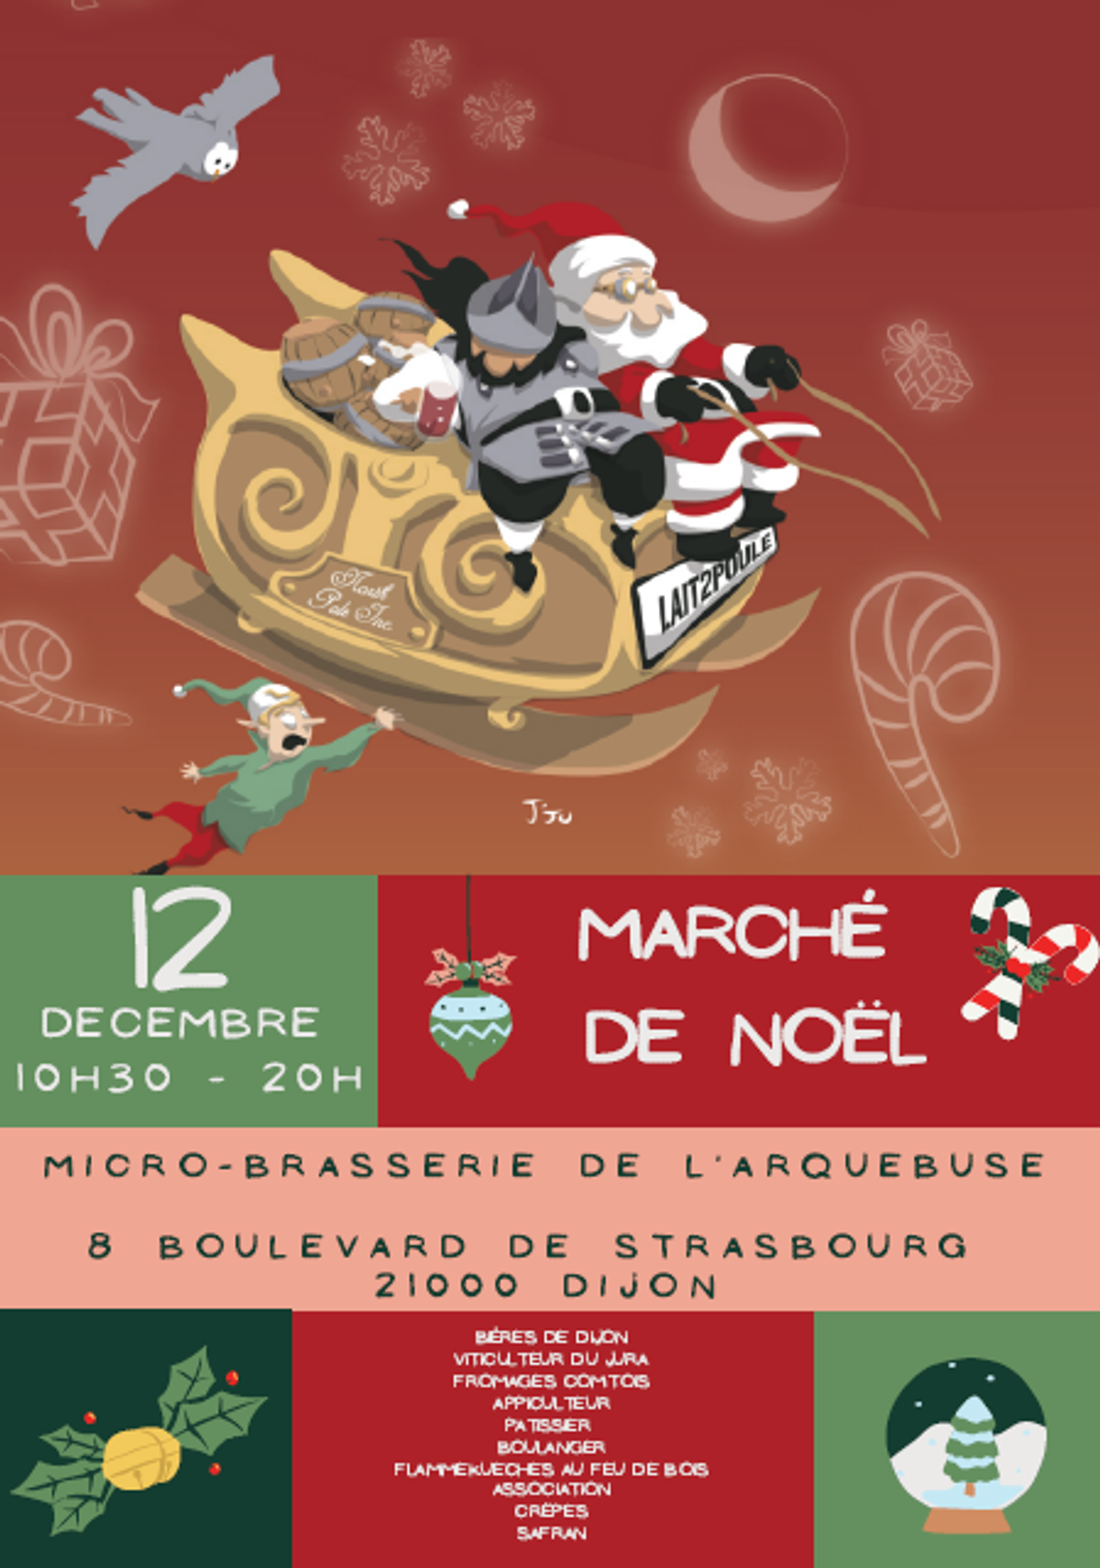 Marché de Noel de la Micro Brasserie de L'arquebuse 